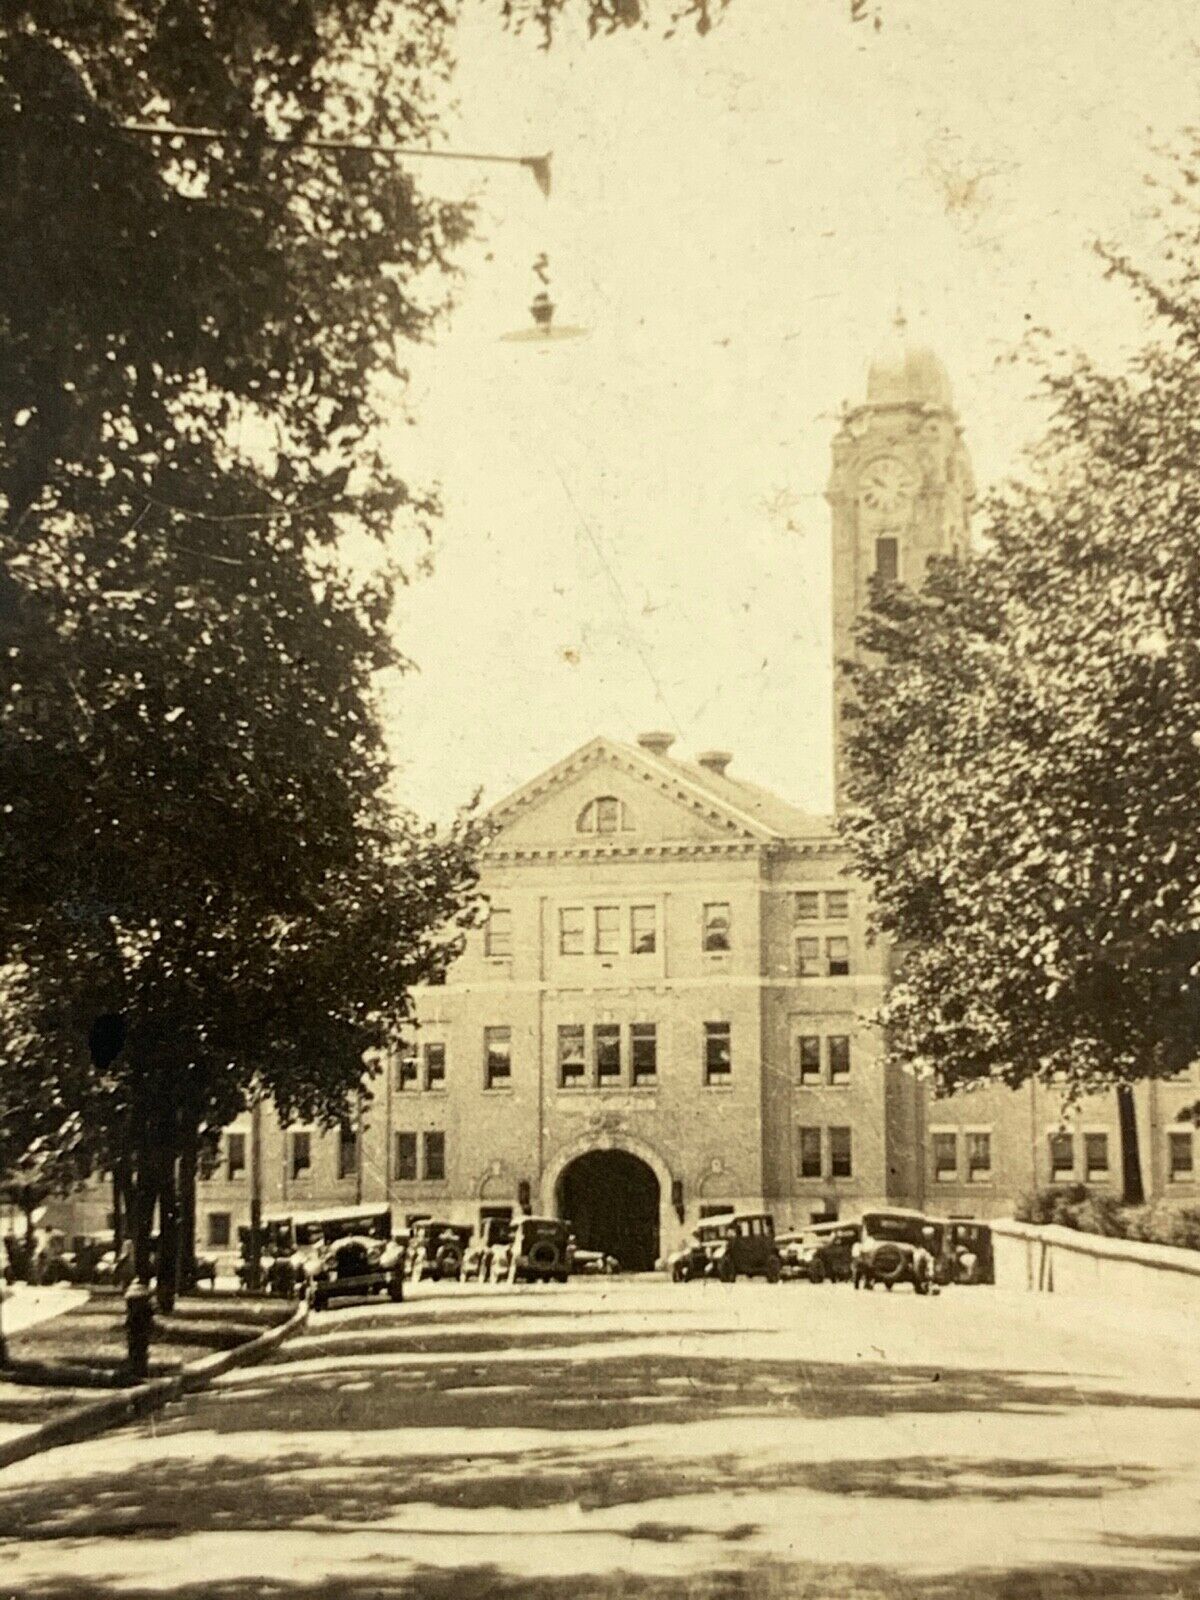 (Af) Vintage Orig  FOUND PHOTO Photograph Snapshot 1925 Ft. Leavenworth School